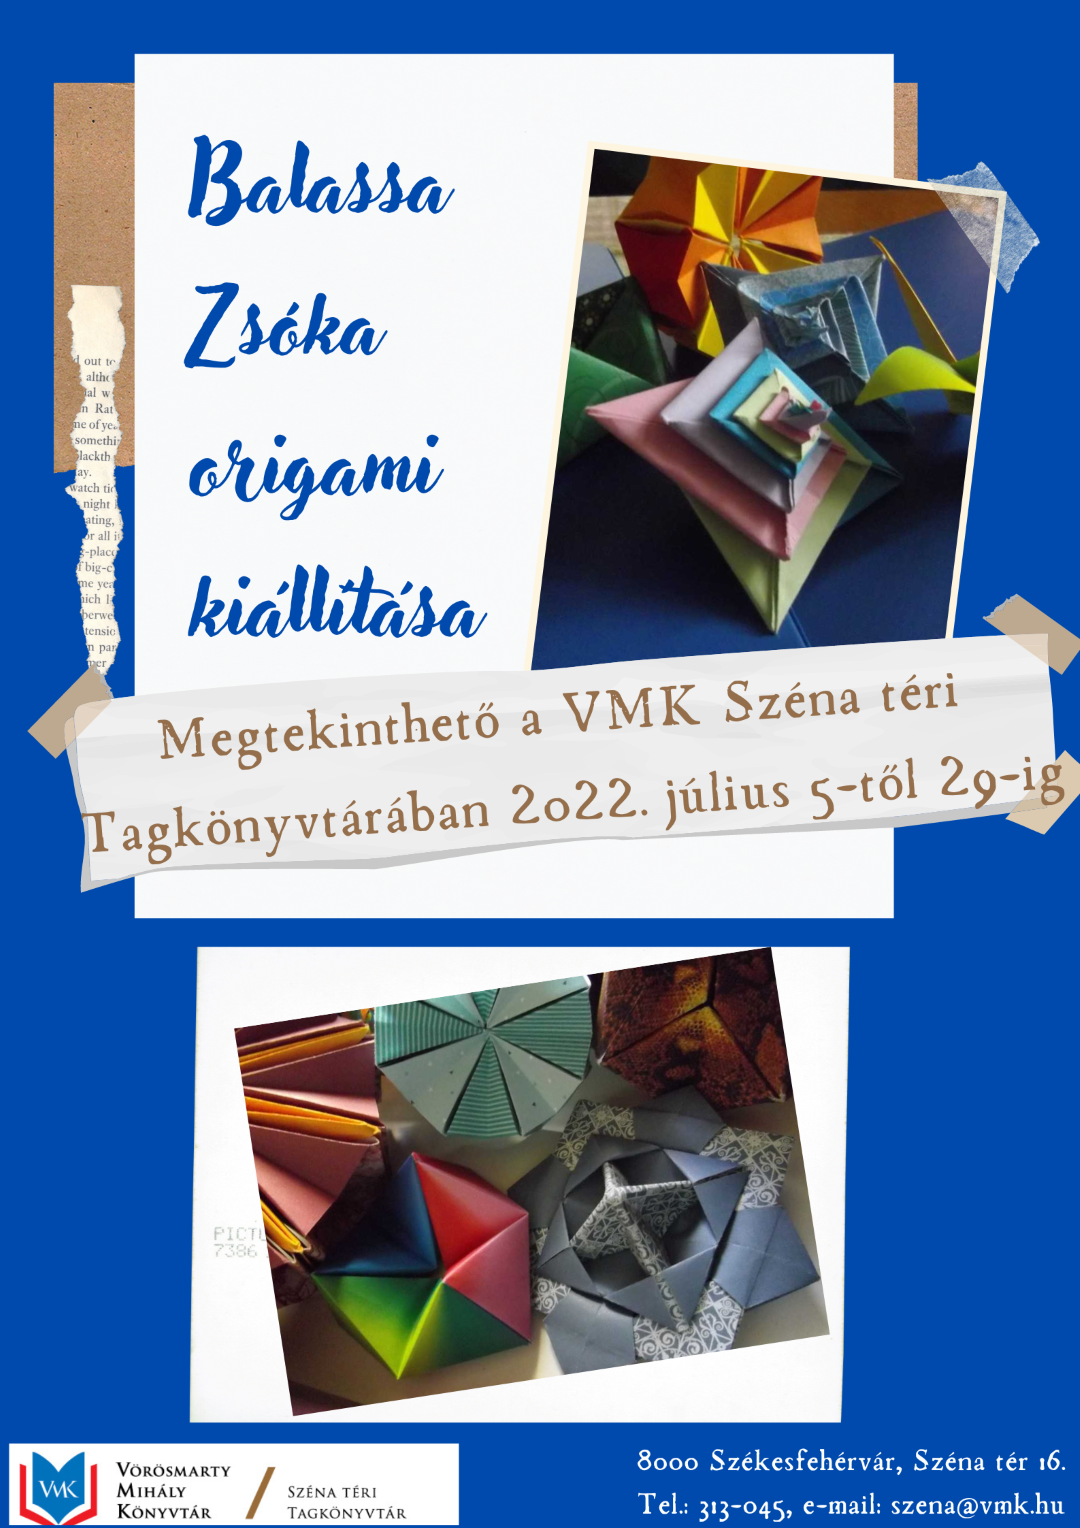 Origami-kiállítás a Vörösmarty Mihály Könyvtárban